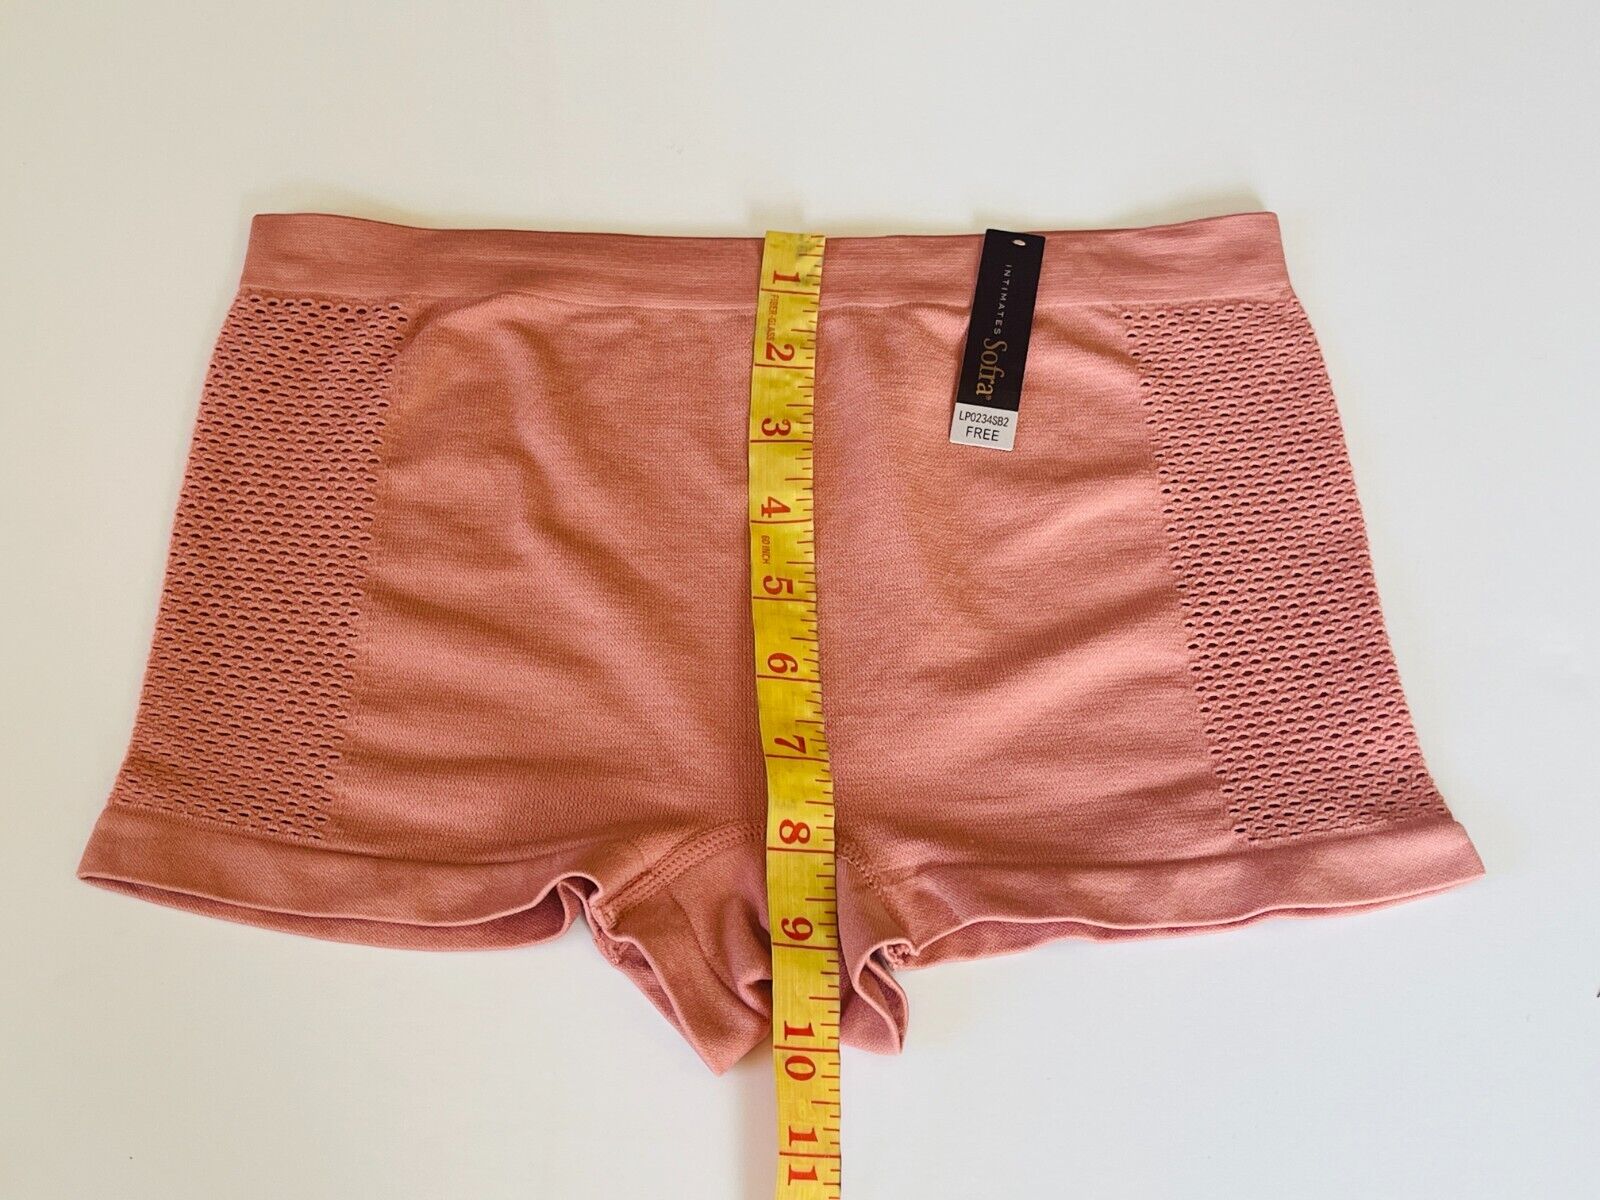 6 Boyshorts sport Active Wear Yoga Seamless Short undies shortie Underwear S-XL EVA - фотография #5